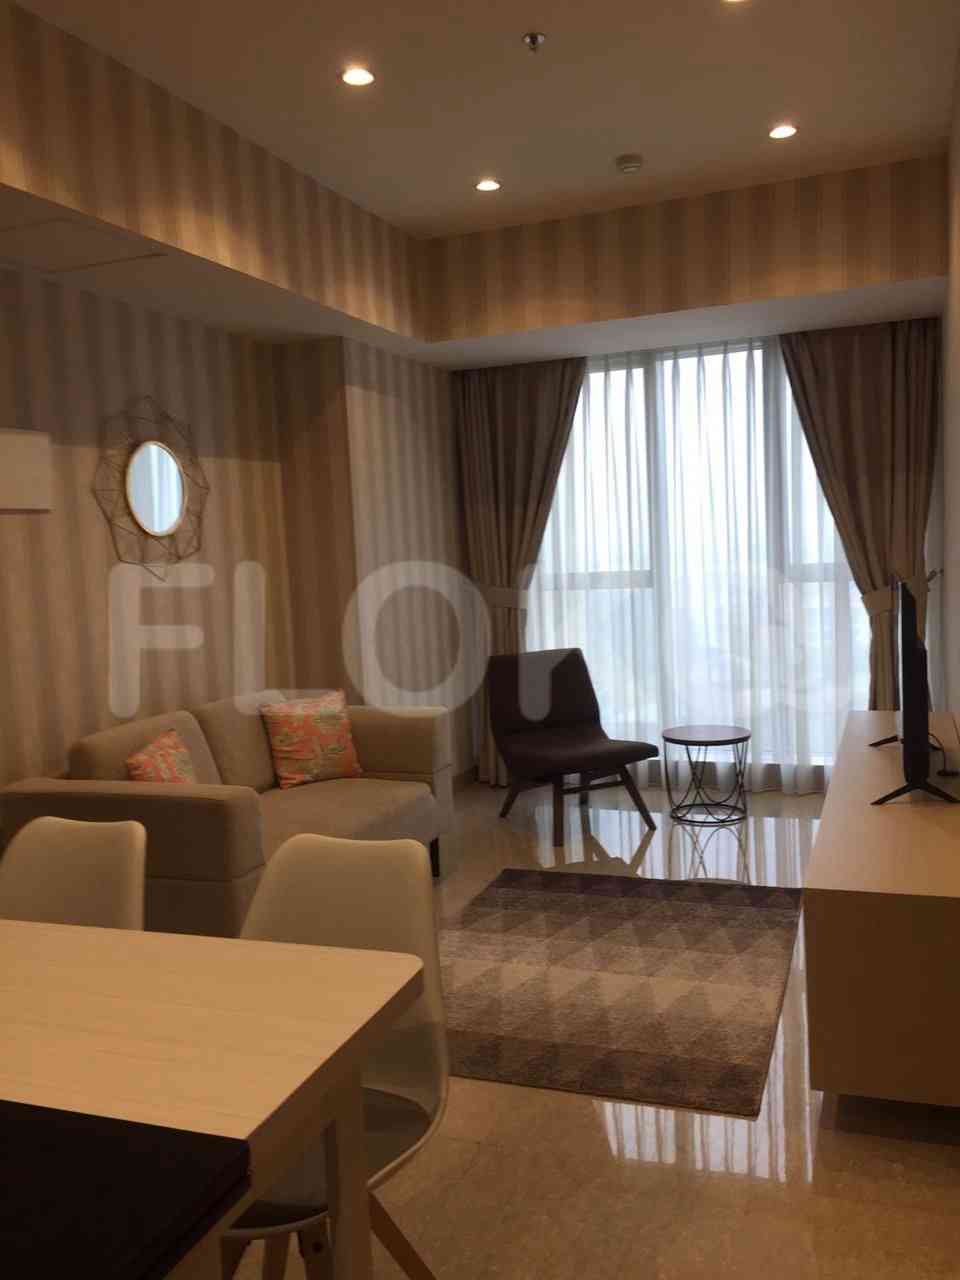 1 Bedroom on 17th Floor for Rent in Branz BSD - fbs9d0 1